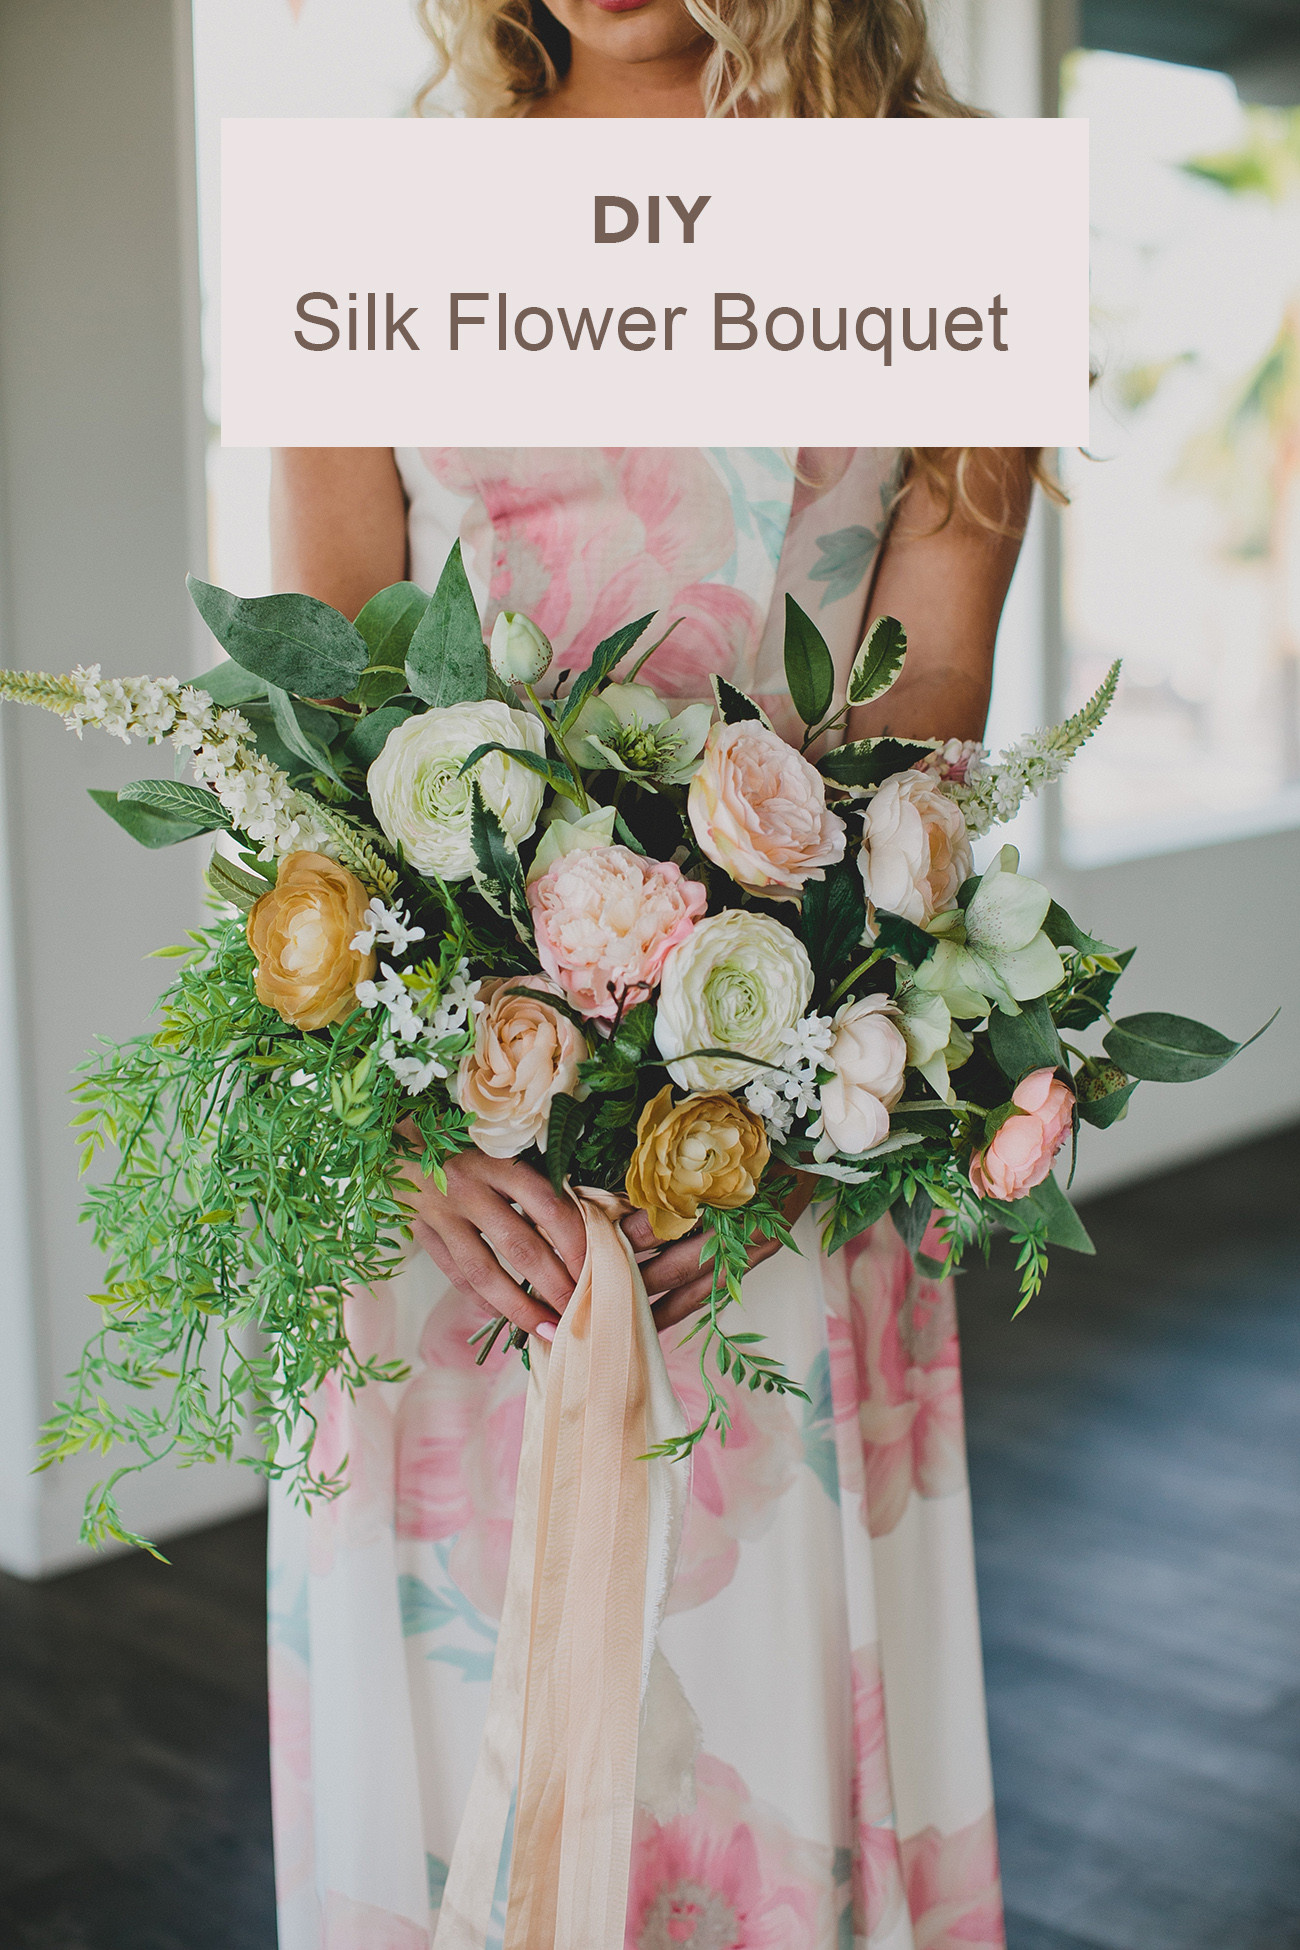 DIY Silk Wedding Bouquet
 DIY Silk Flower Bouquet for an Elopement Green Wedding Shoes